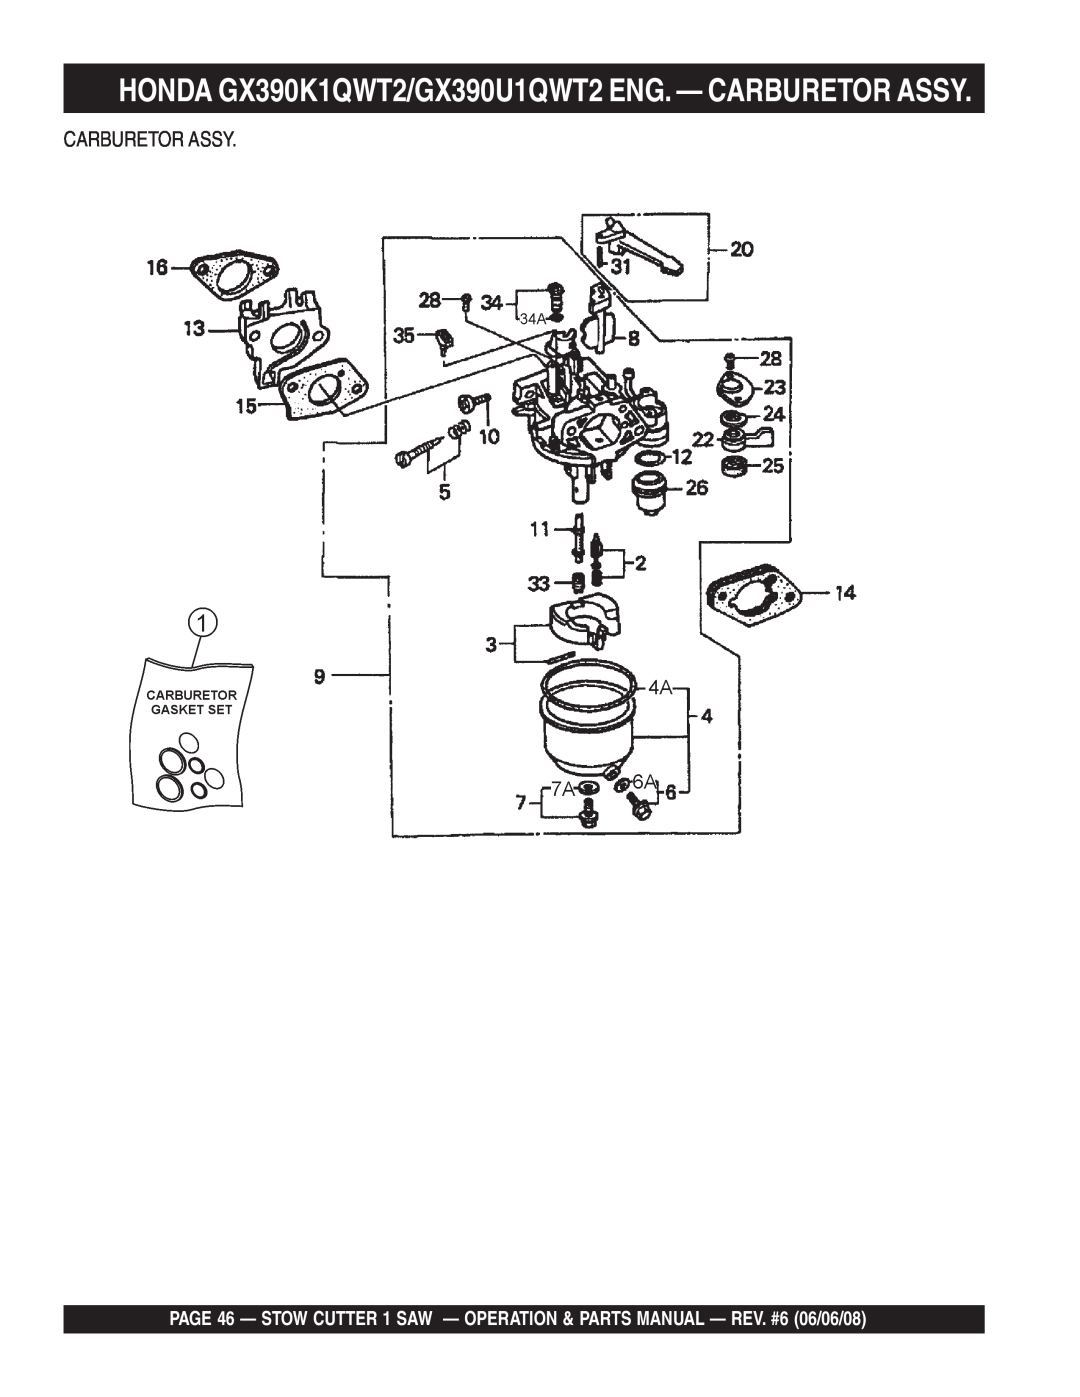 Multiquip CD605E16 (5 HP Electric Motor) manual HONDA GX390K1QWT2/GX390U1QWT2 ENG. - CARBURETOR ASSY, Carburetor Assy 